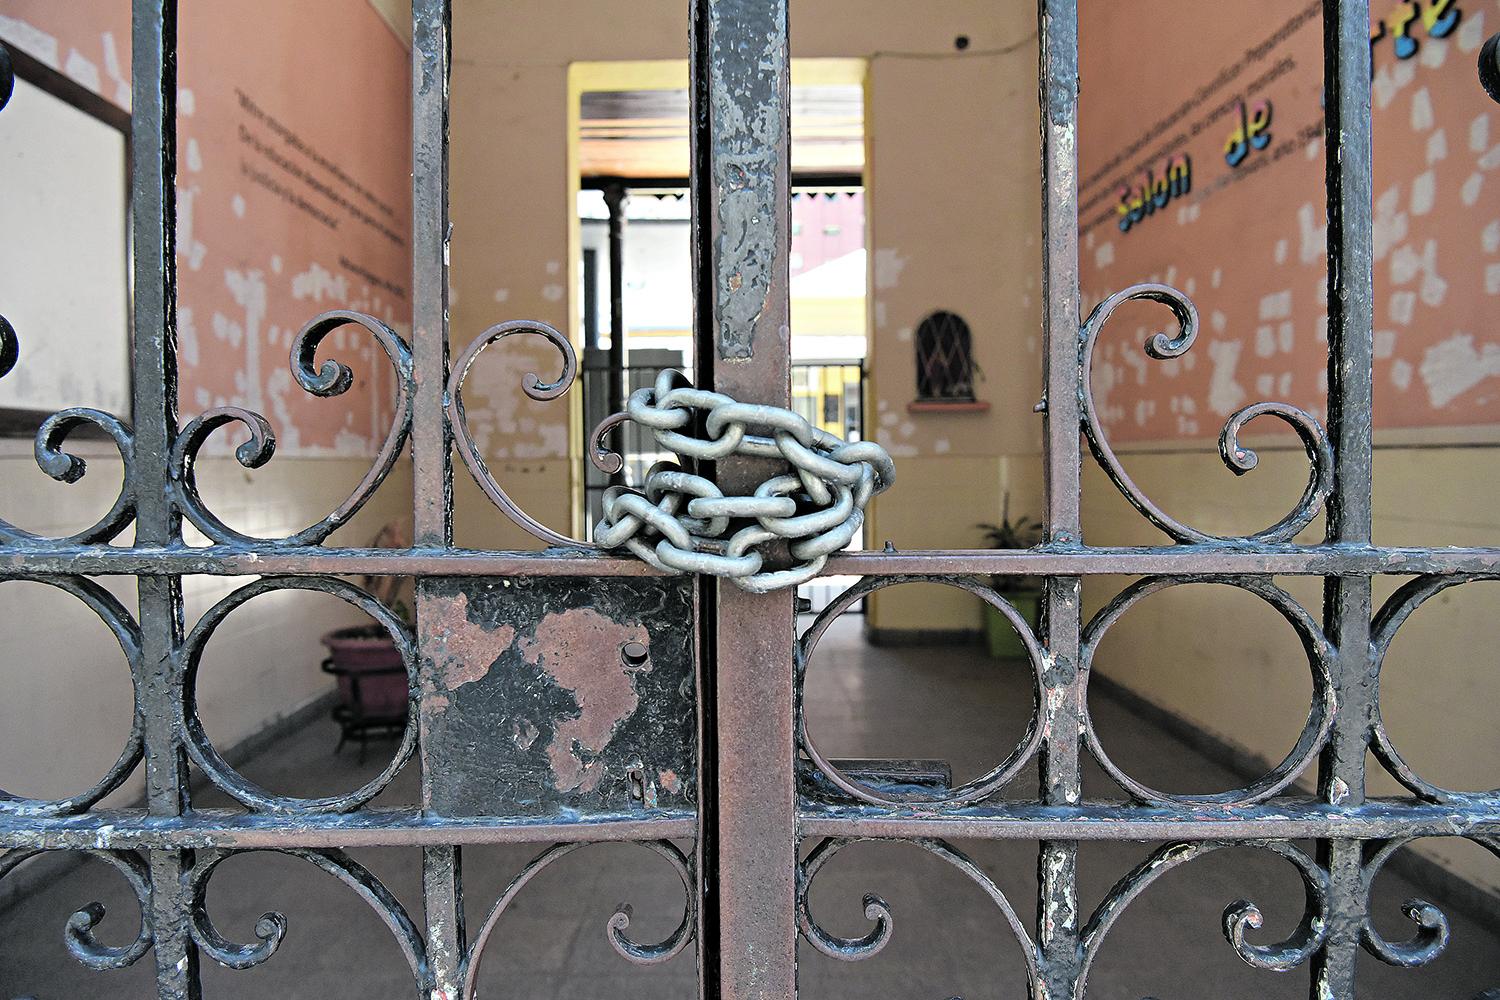 UN CIERRE ENCADENADO. La puerta de acceso a la icónica escuela de barrio Norte, en Santiago y Muñecas, se mantiene encadenada.